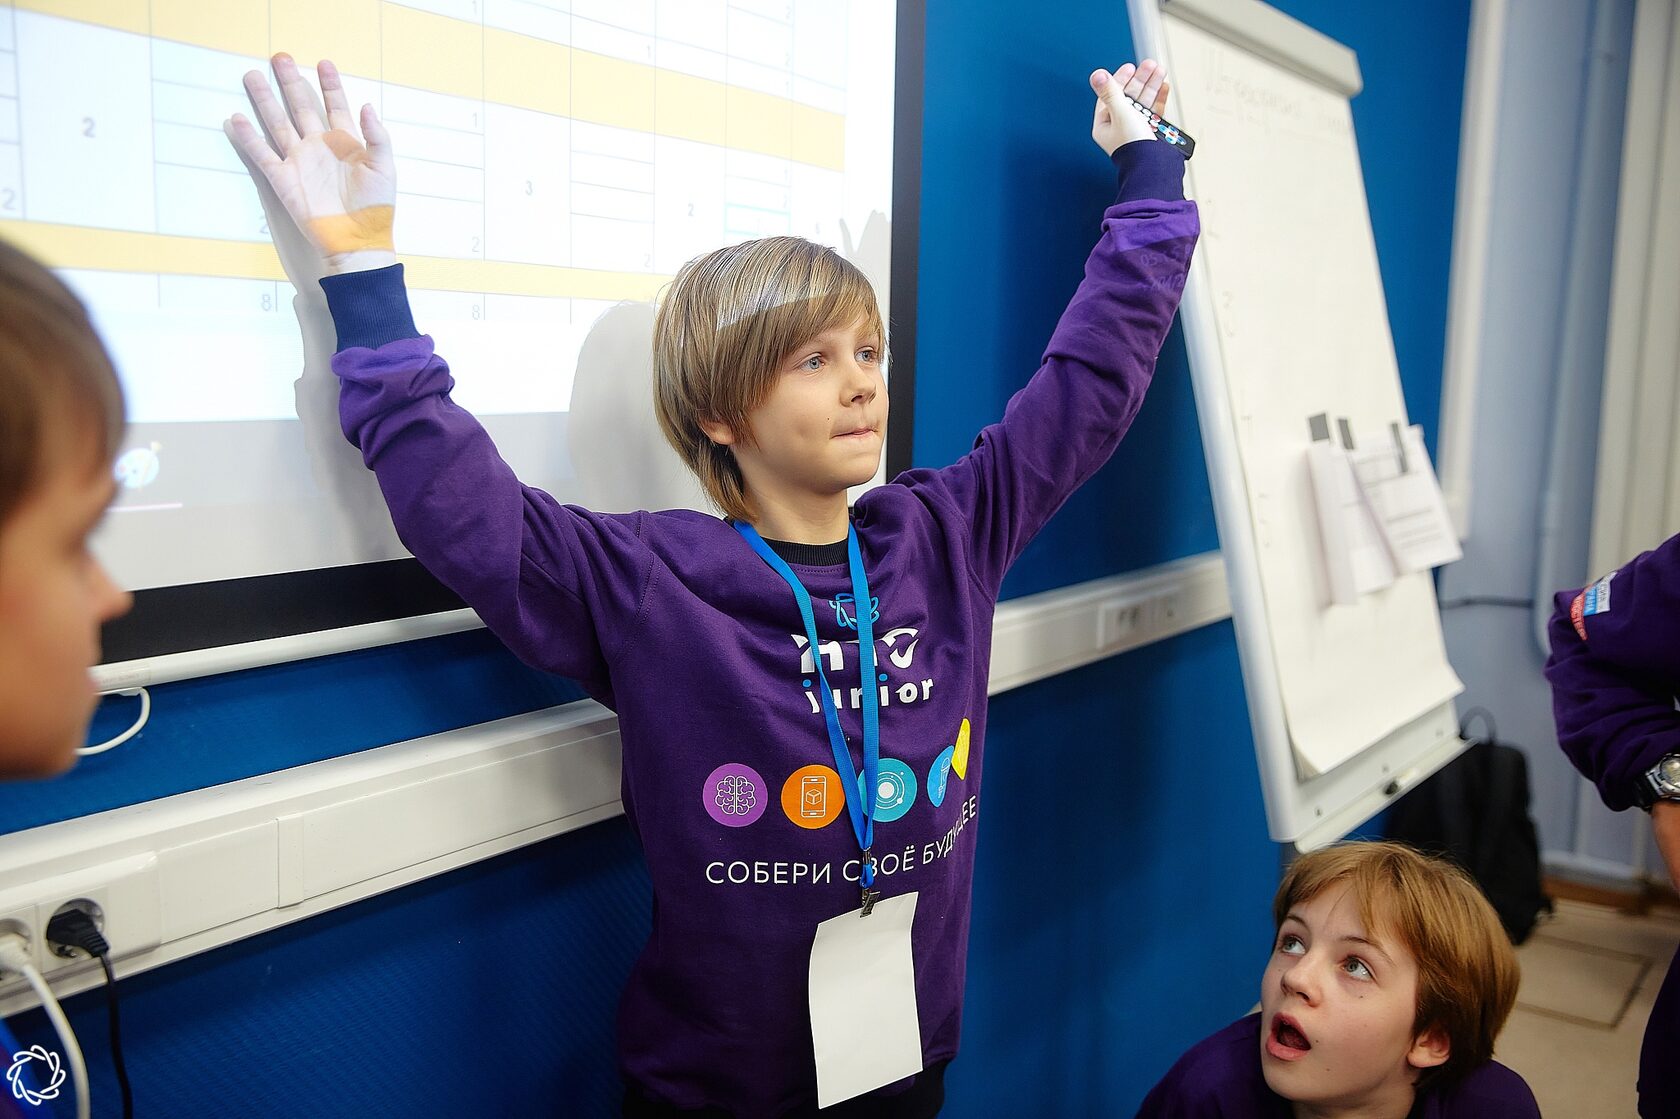 Финалист НТО Junior радостно вскидывает руки перед экраном с презентацией.